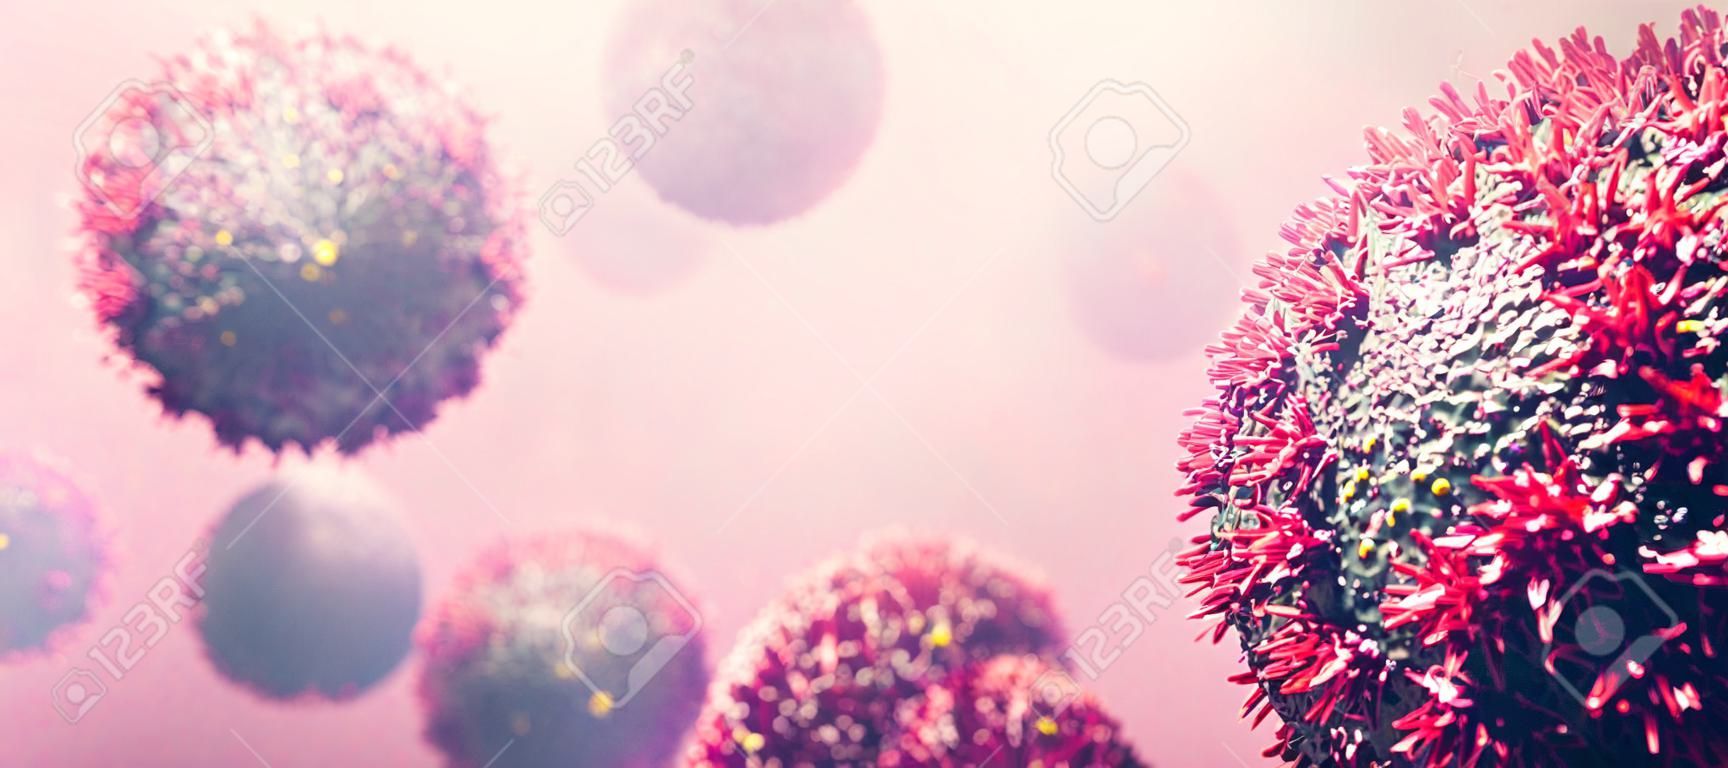 Coronavirus COVID-19 organismo di attacco. Corona virus che causa pandemia. illustrazione 3D